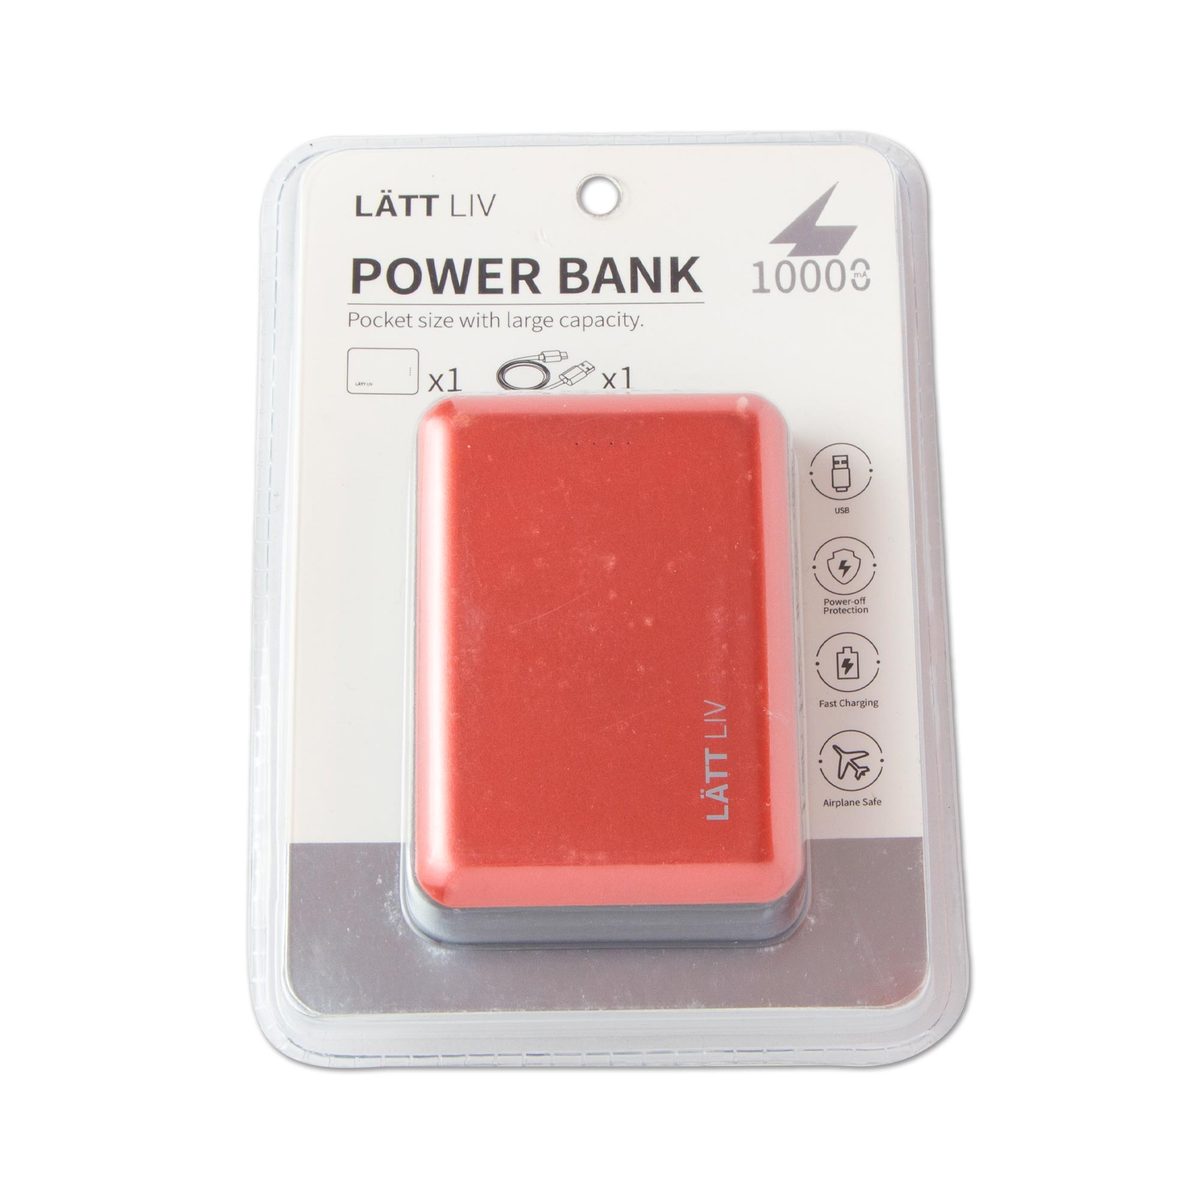 Power Bank - 10000mAh